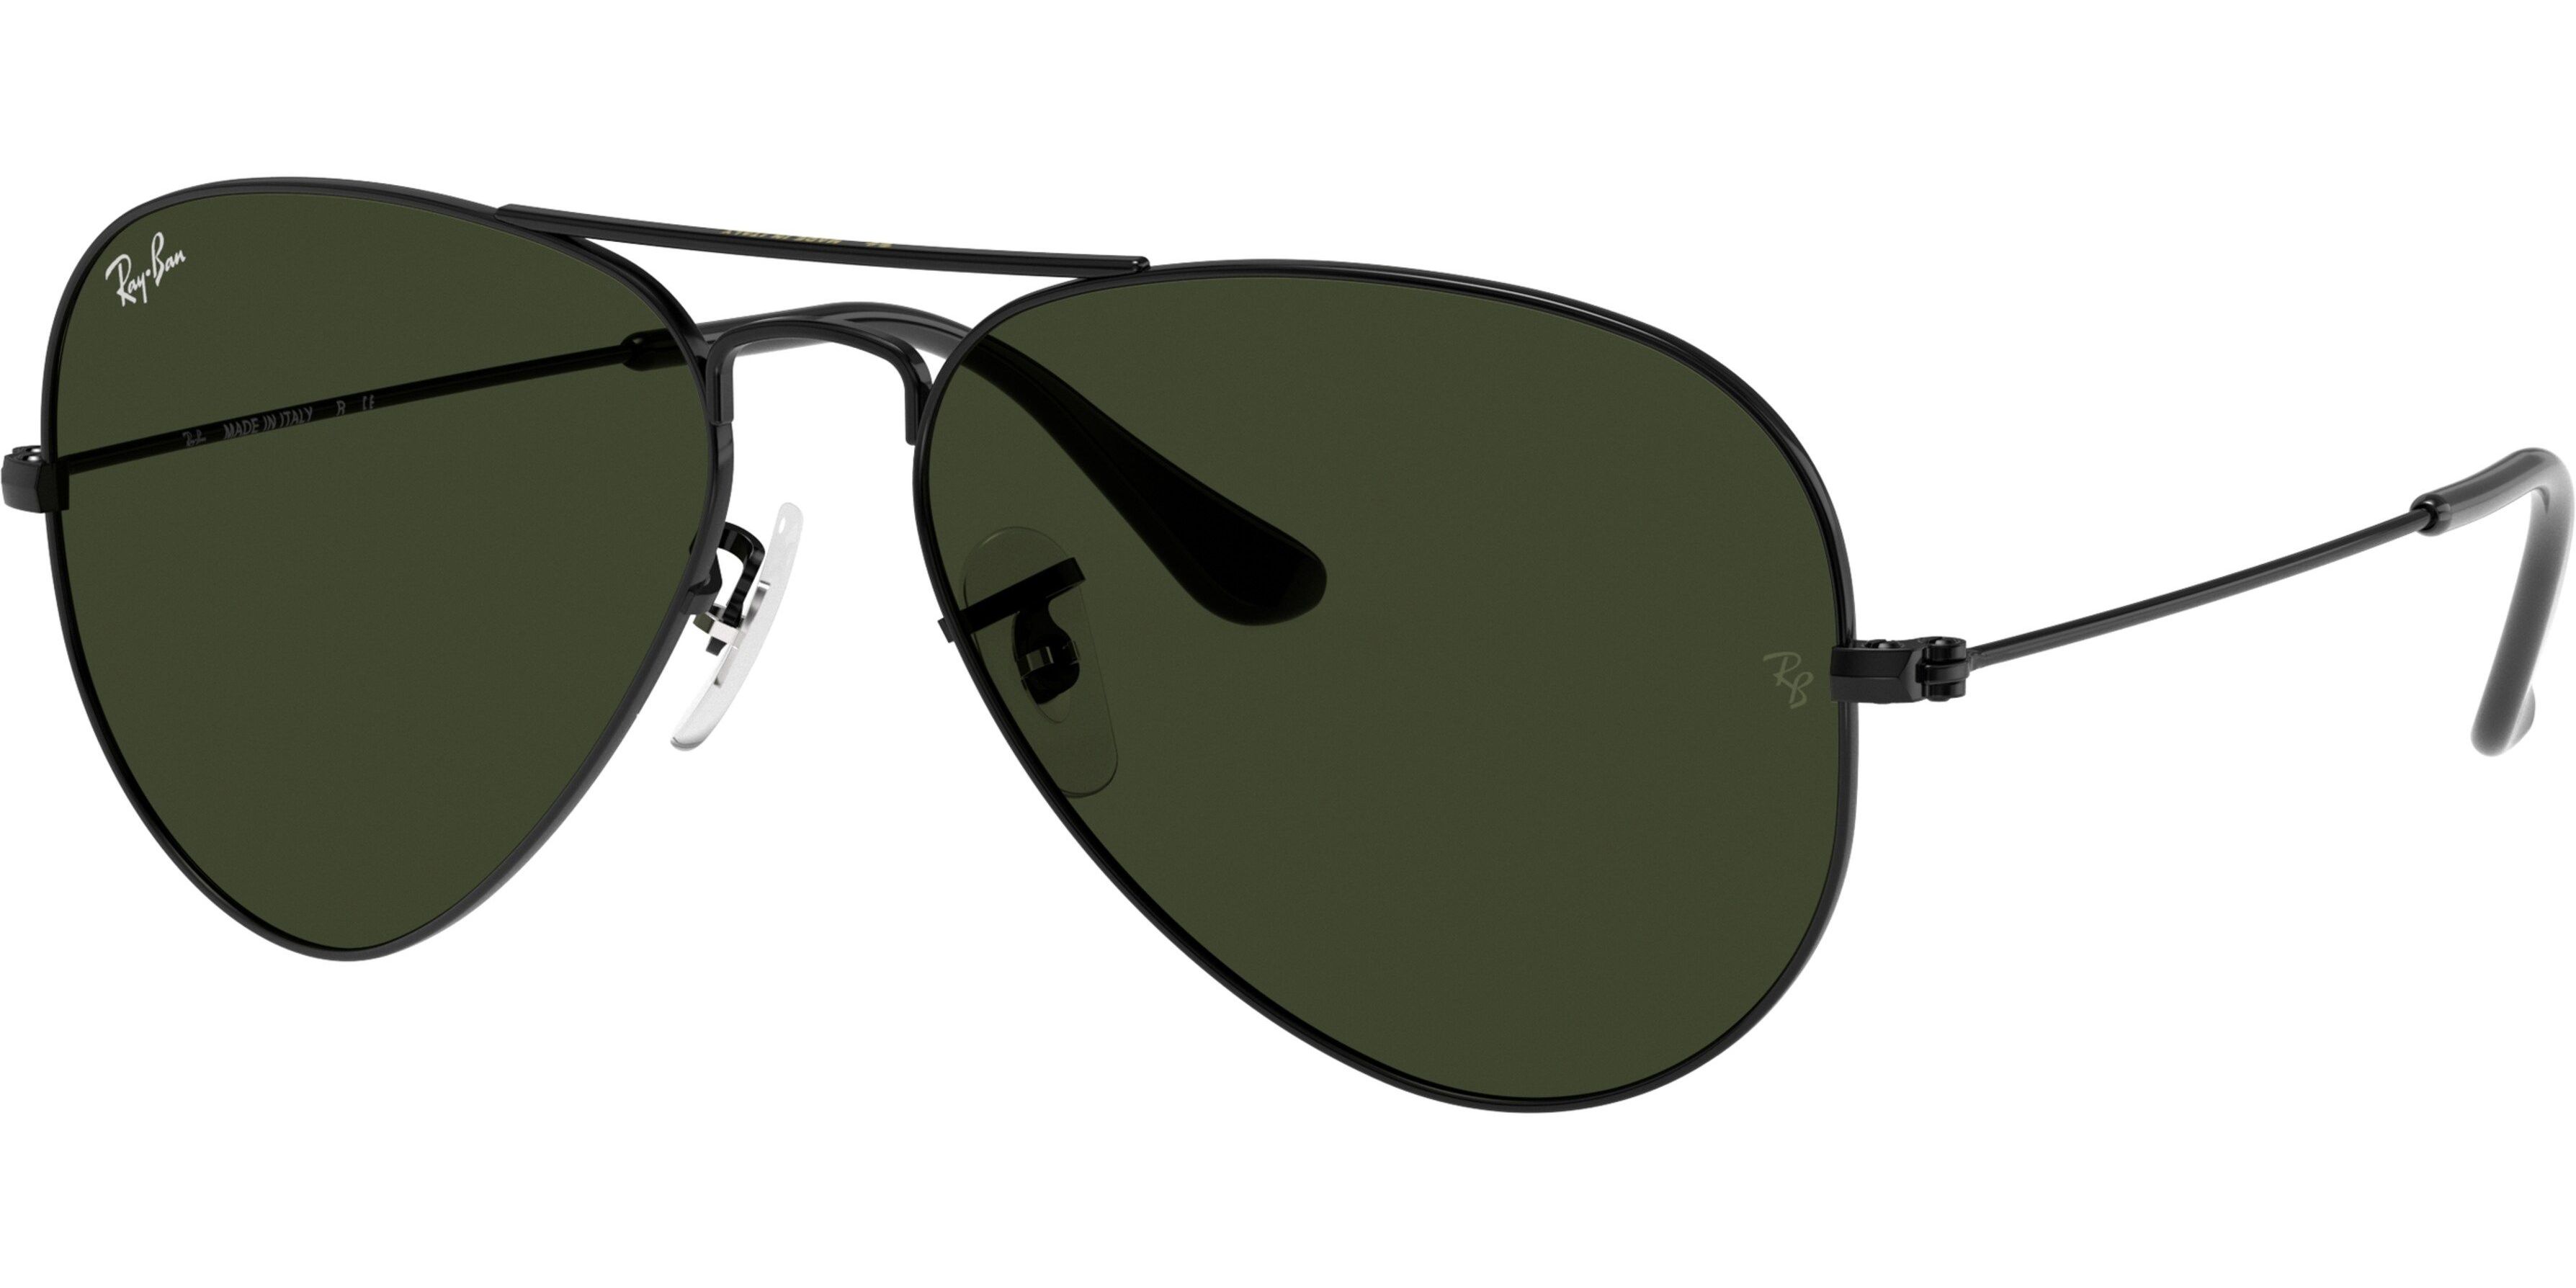 Sluneční brýle Ray-Ban® model 3025, barva obruby černá lesk, čočka zelená, kód barevné varianty L2823. 